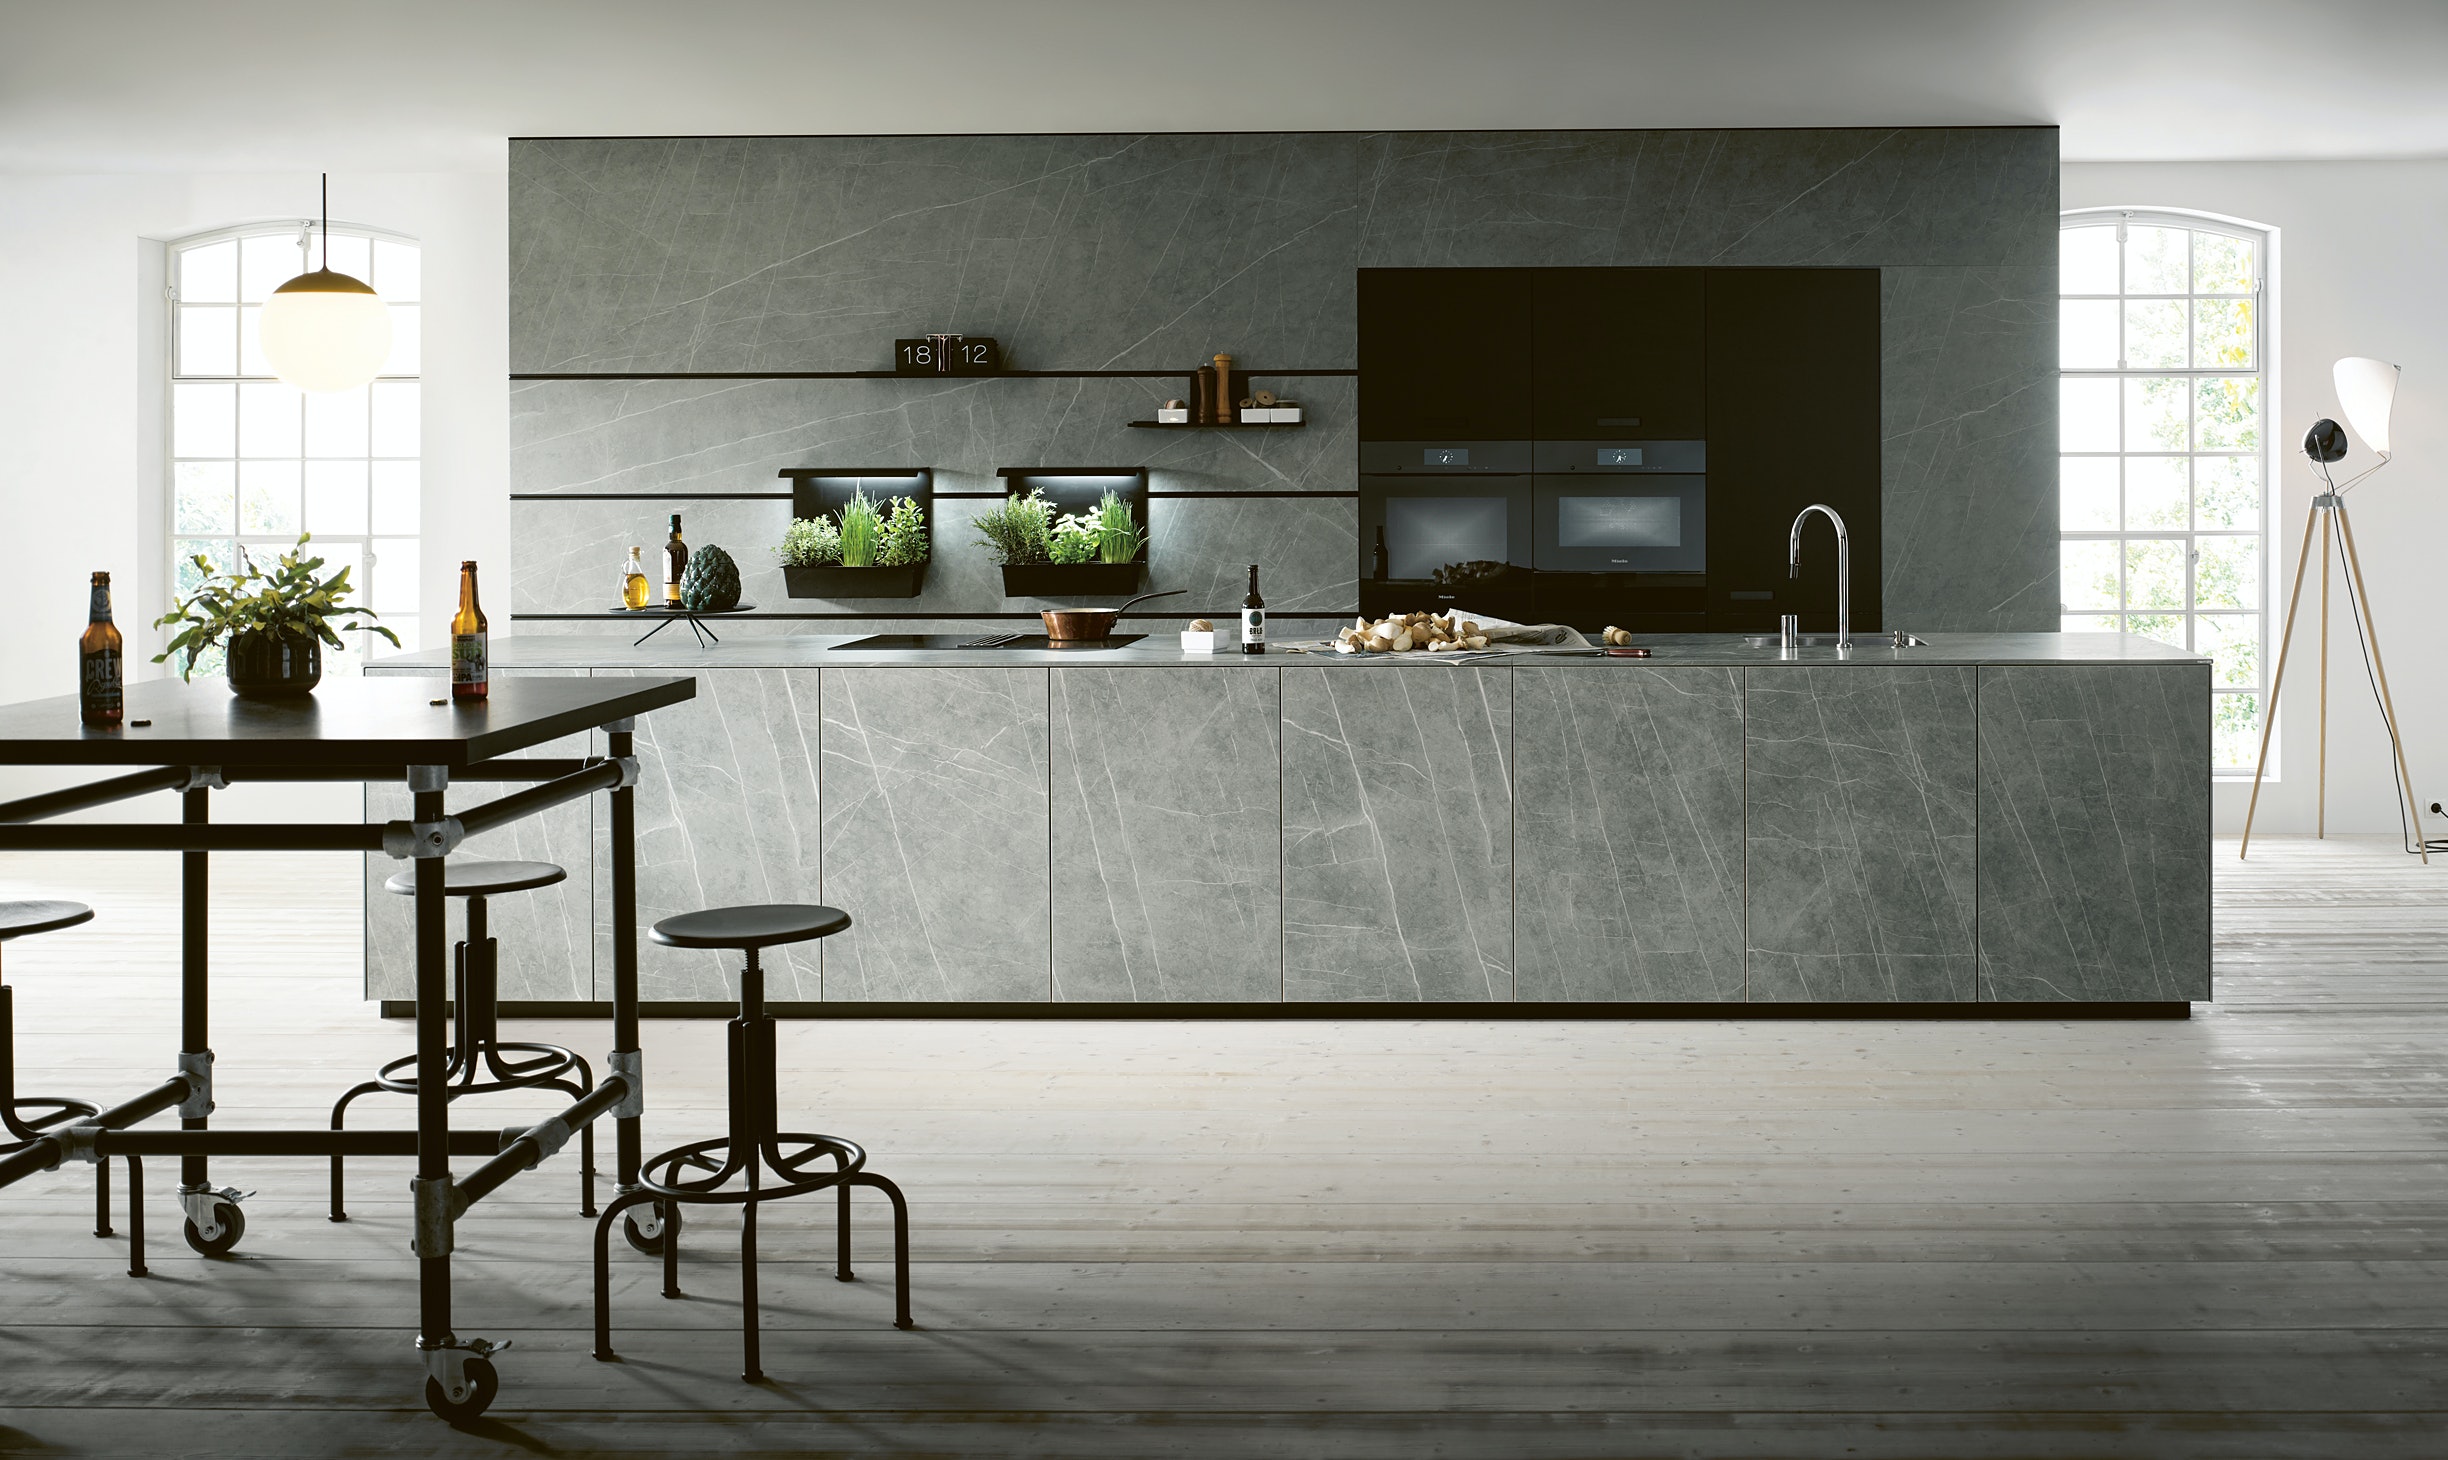 De NX950 van next125 beschikt over een riant keukenblok in keramiek in marmer grigio imitatie.